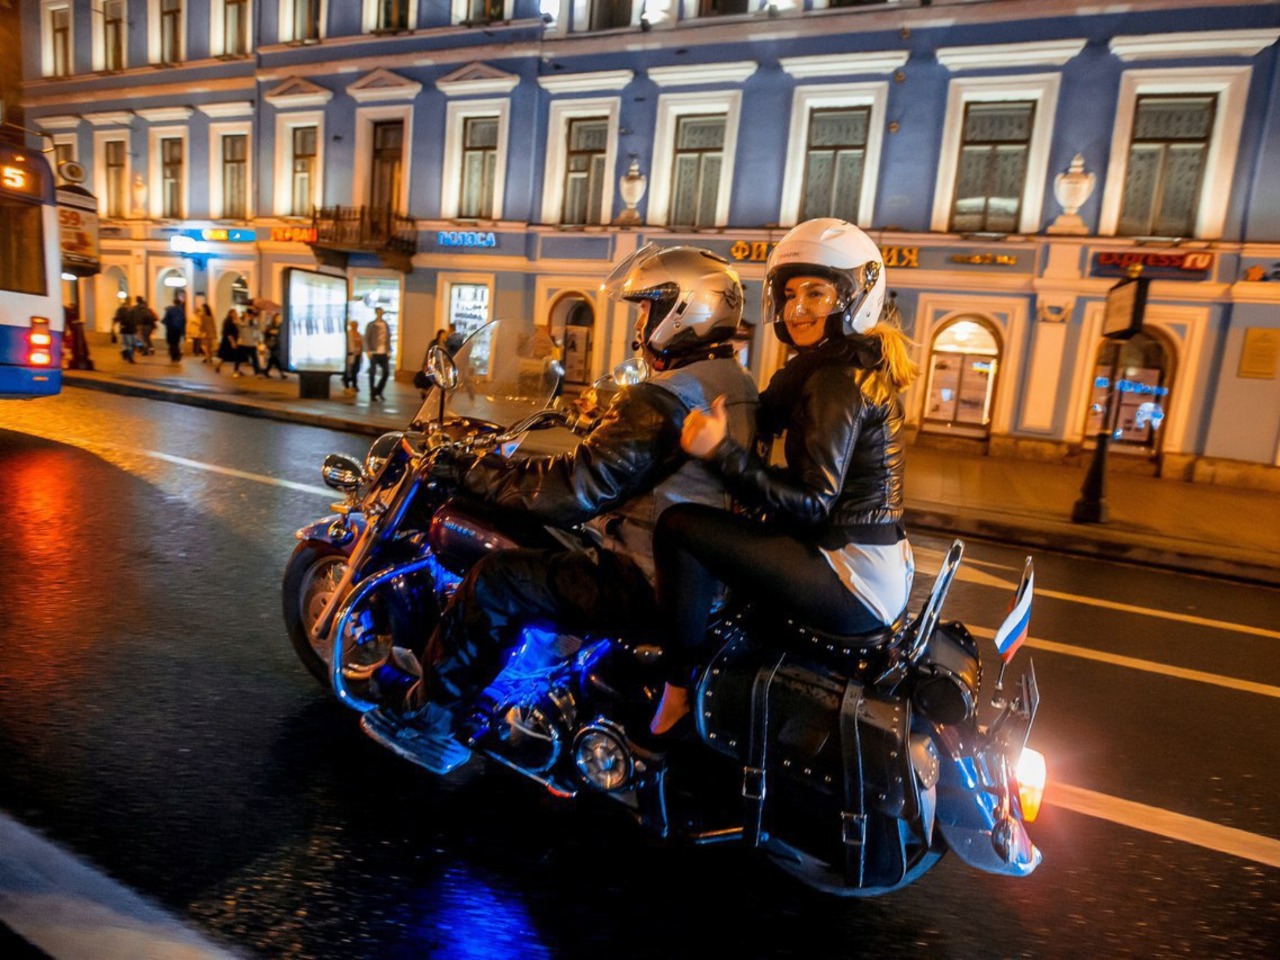 На мотоцикле по Нижнему Новгороду днём и ночью  | Цена 2600₽, отзывы, описание экскурсии